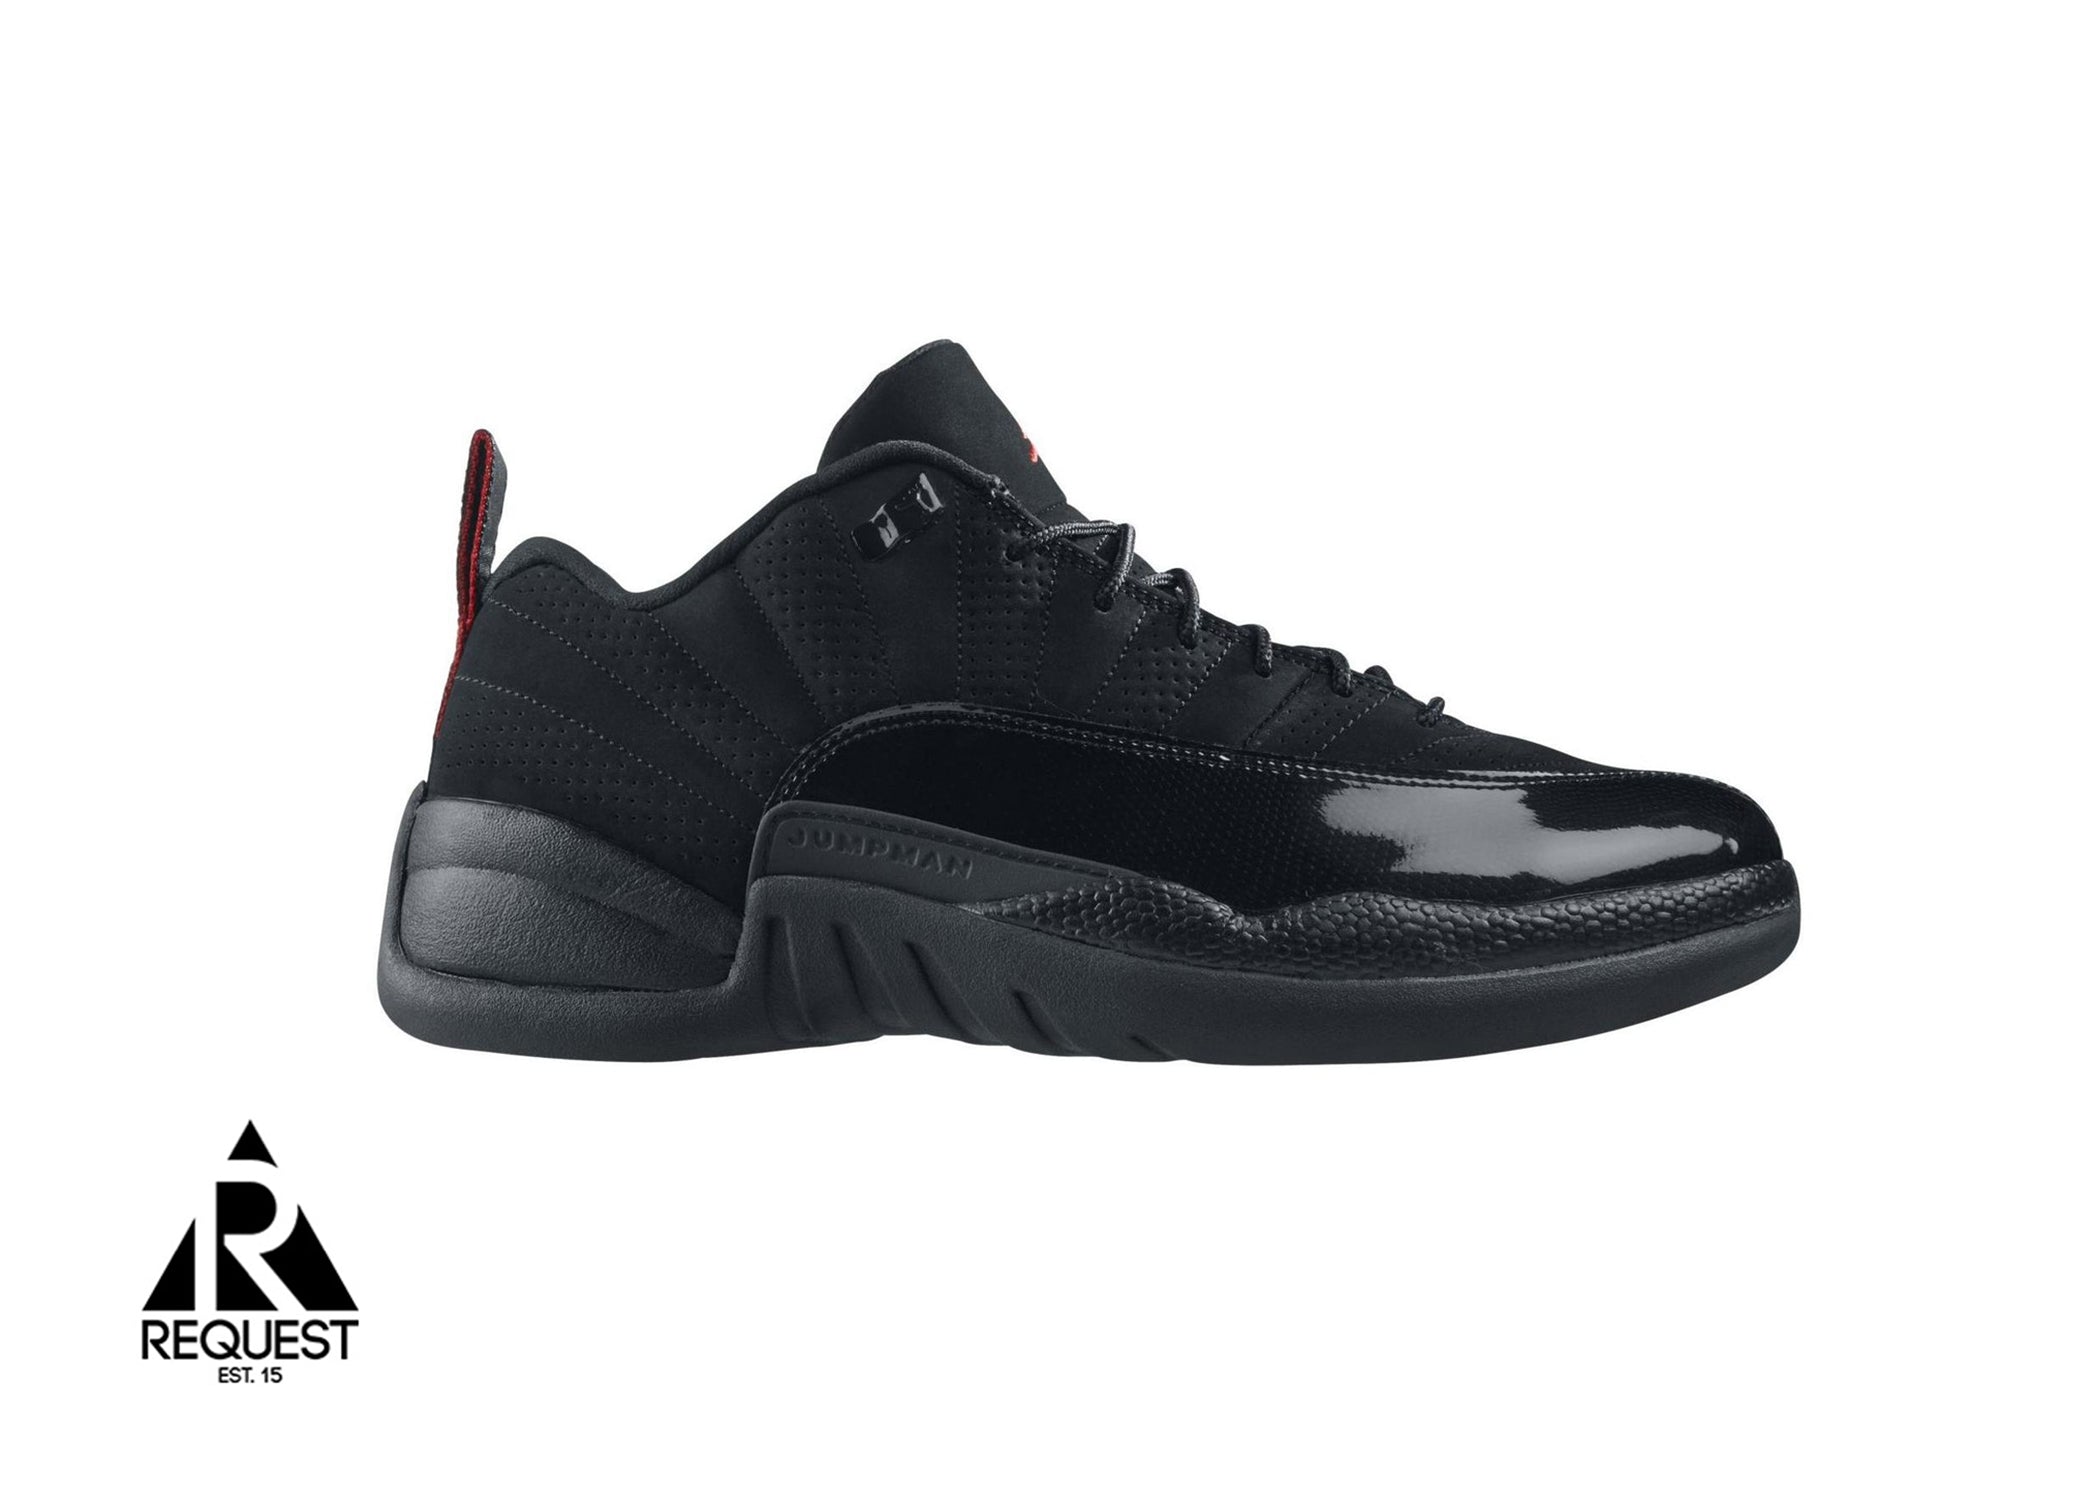 Air Jordan 12 Retro Low “Black Patent”